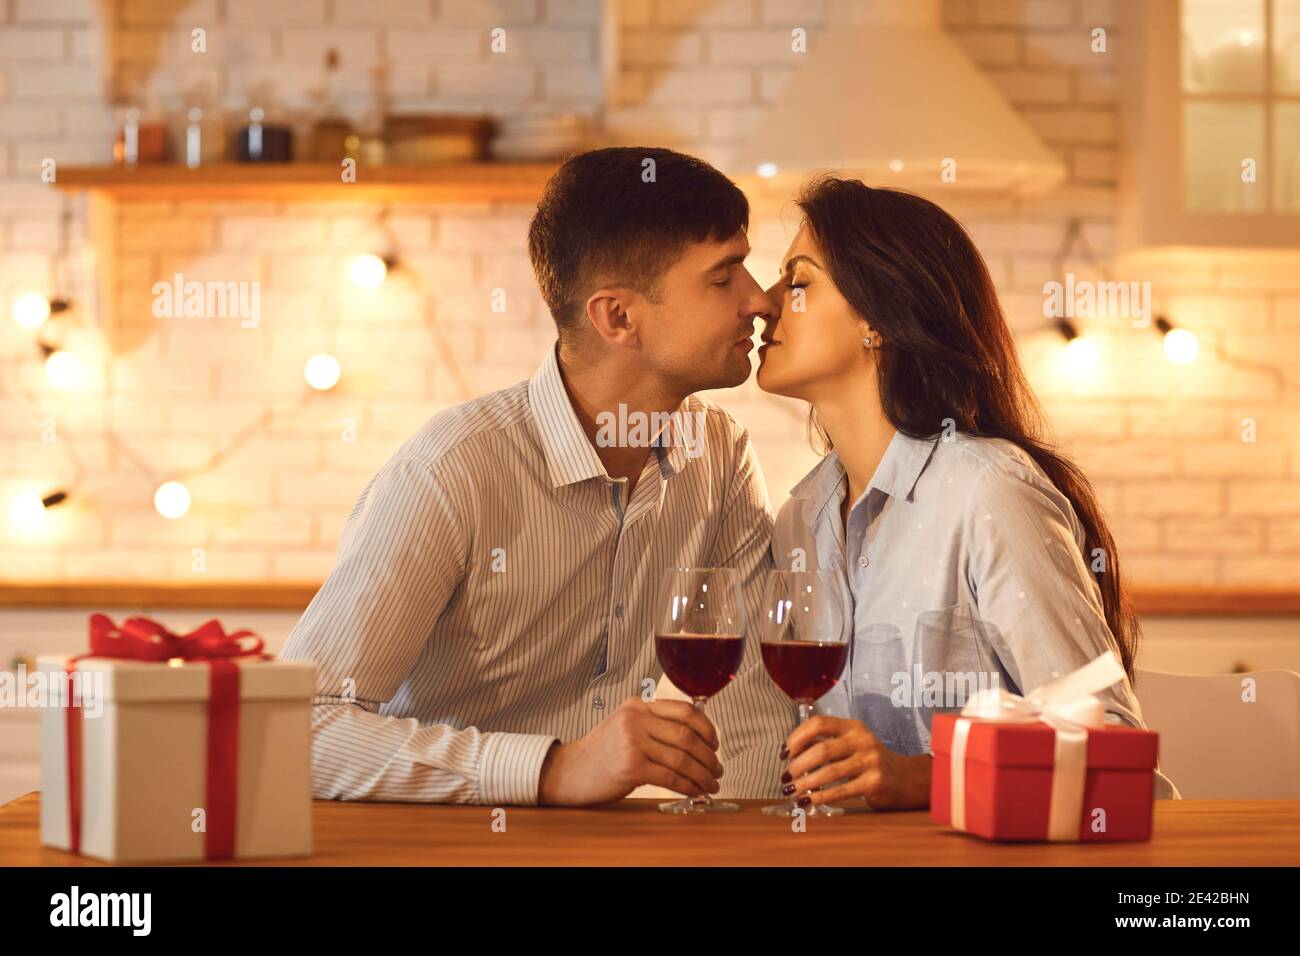 Un jeune couple aimant homme et une femme assis s'embrassant les uns les autres Pendant la Saint-Valentin Banque D'Images